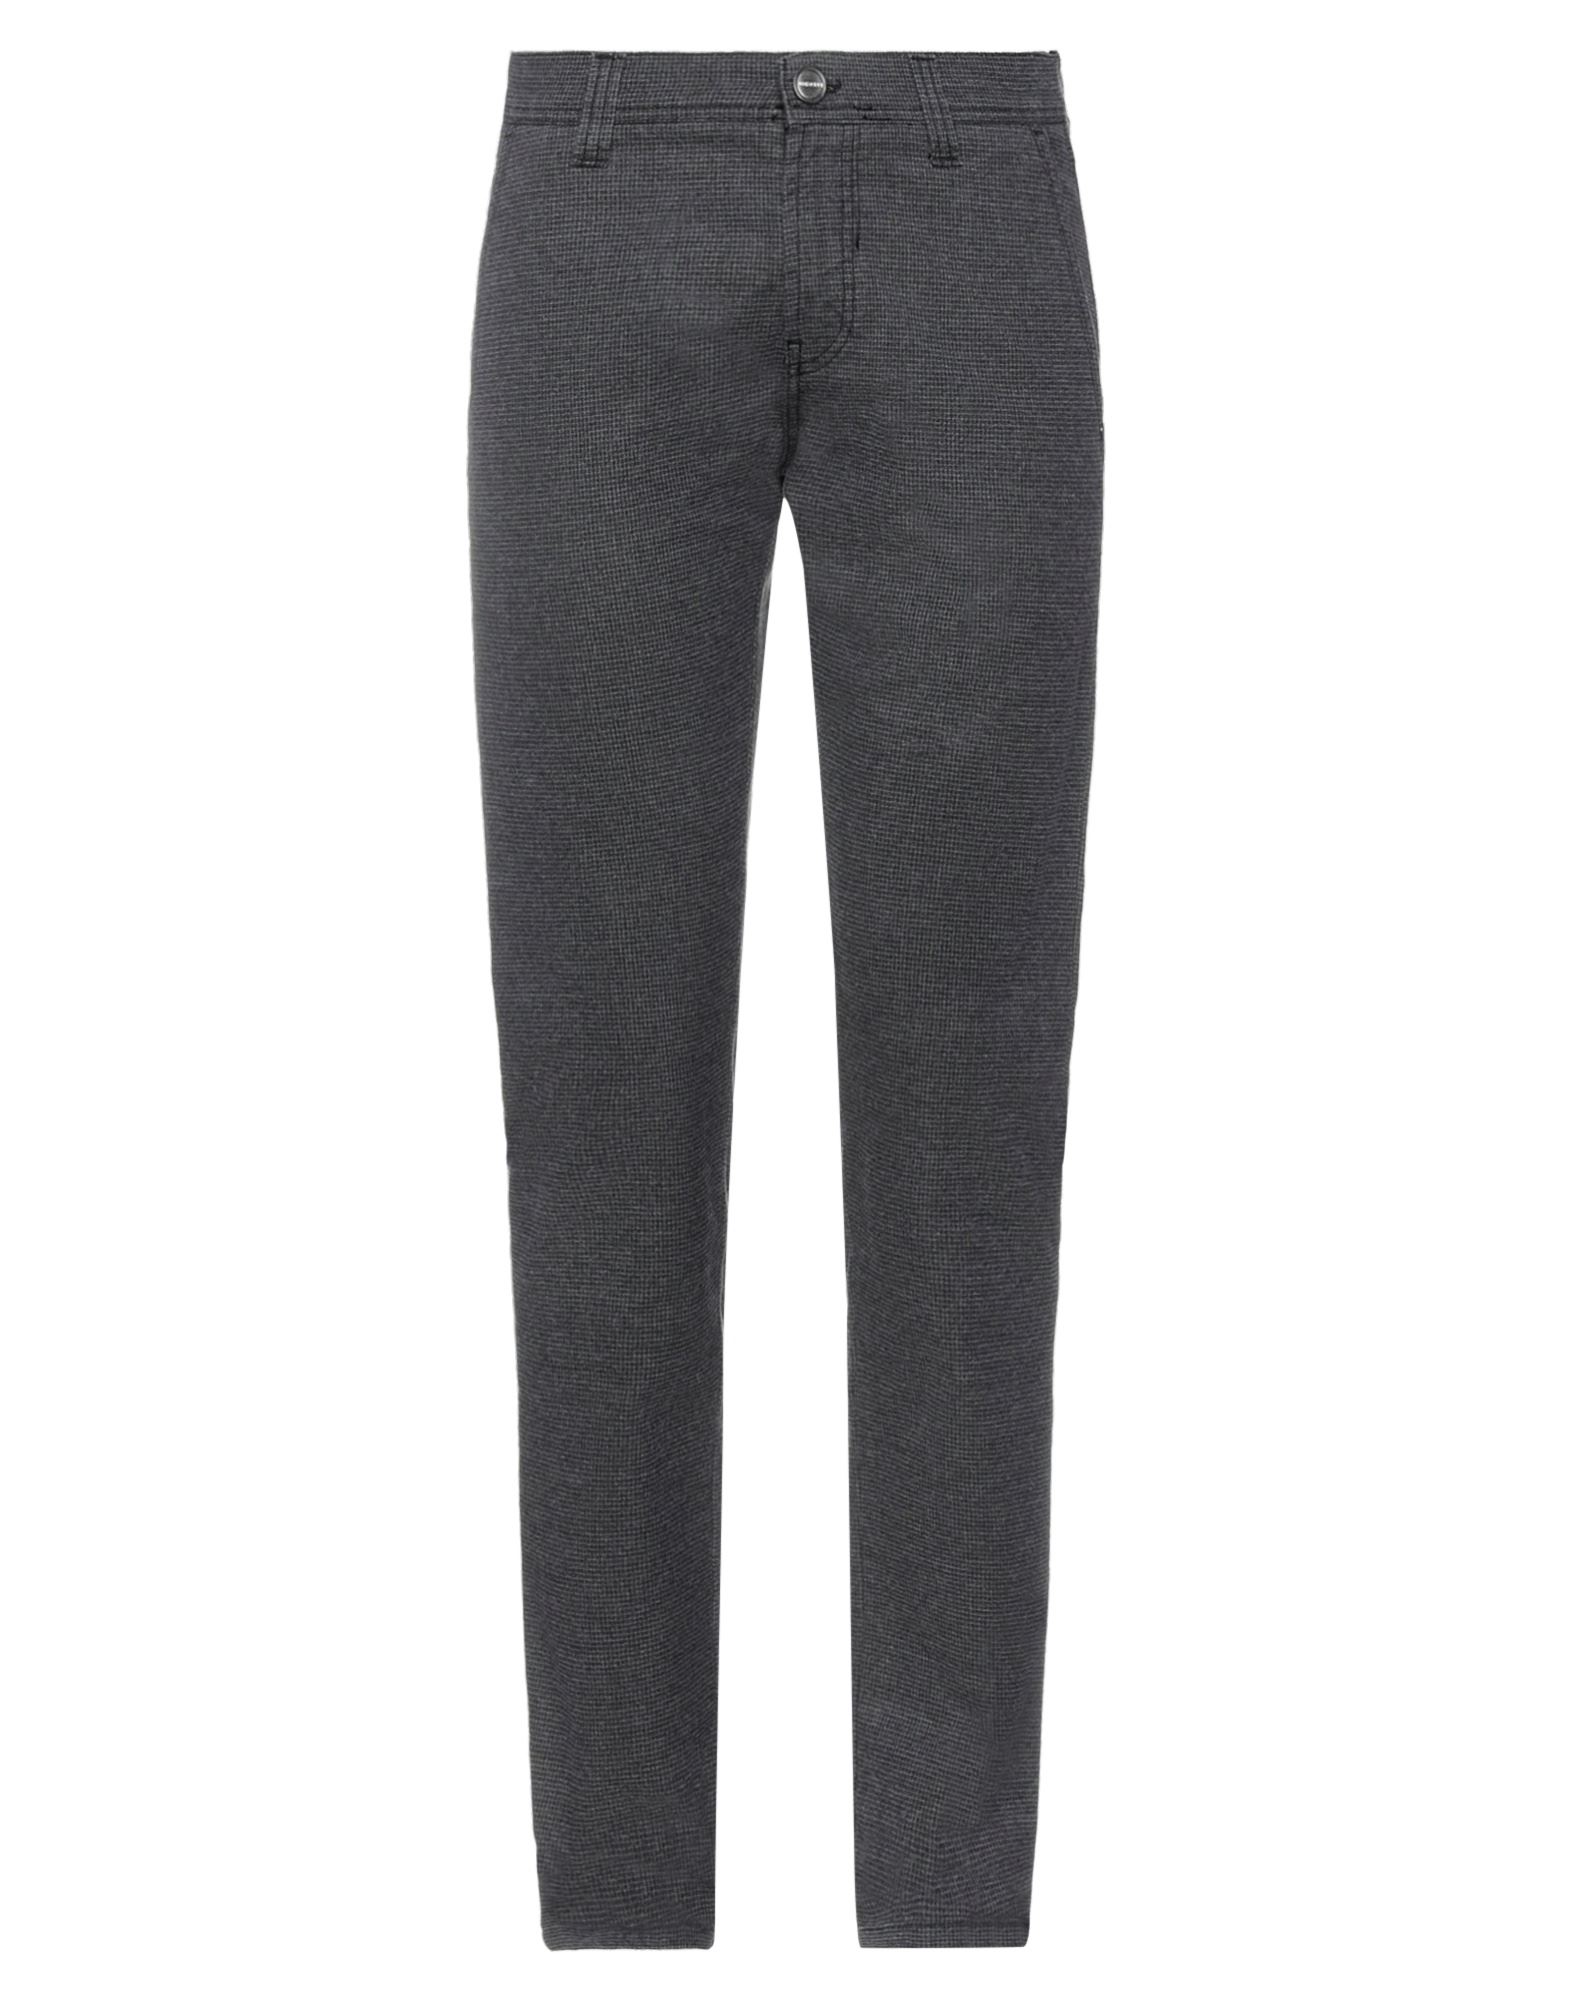 Nicwave Pants In Steel Grey